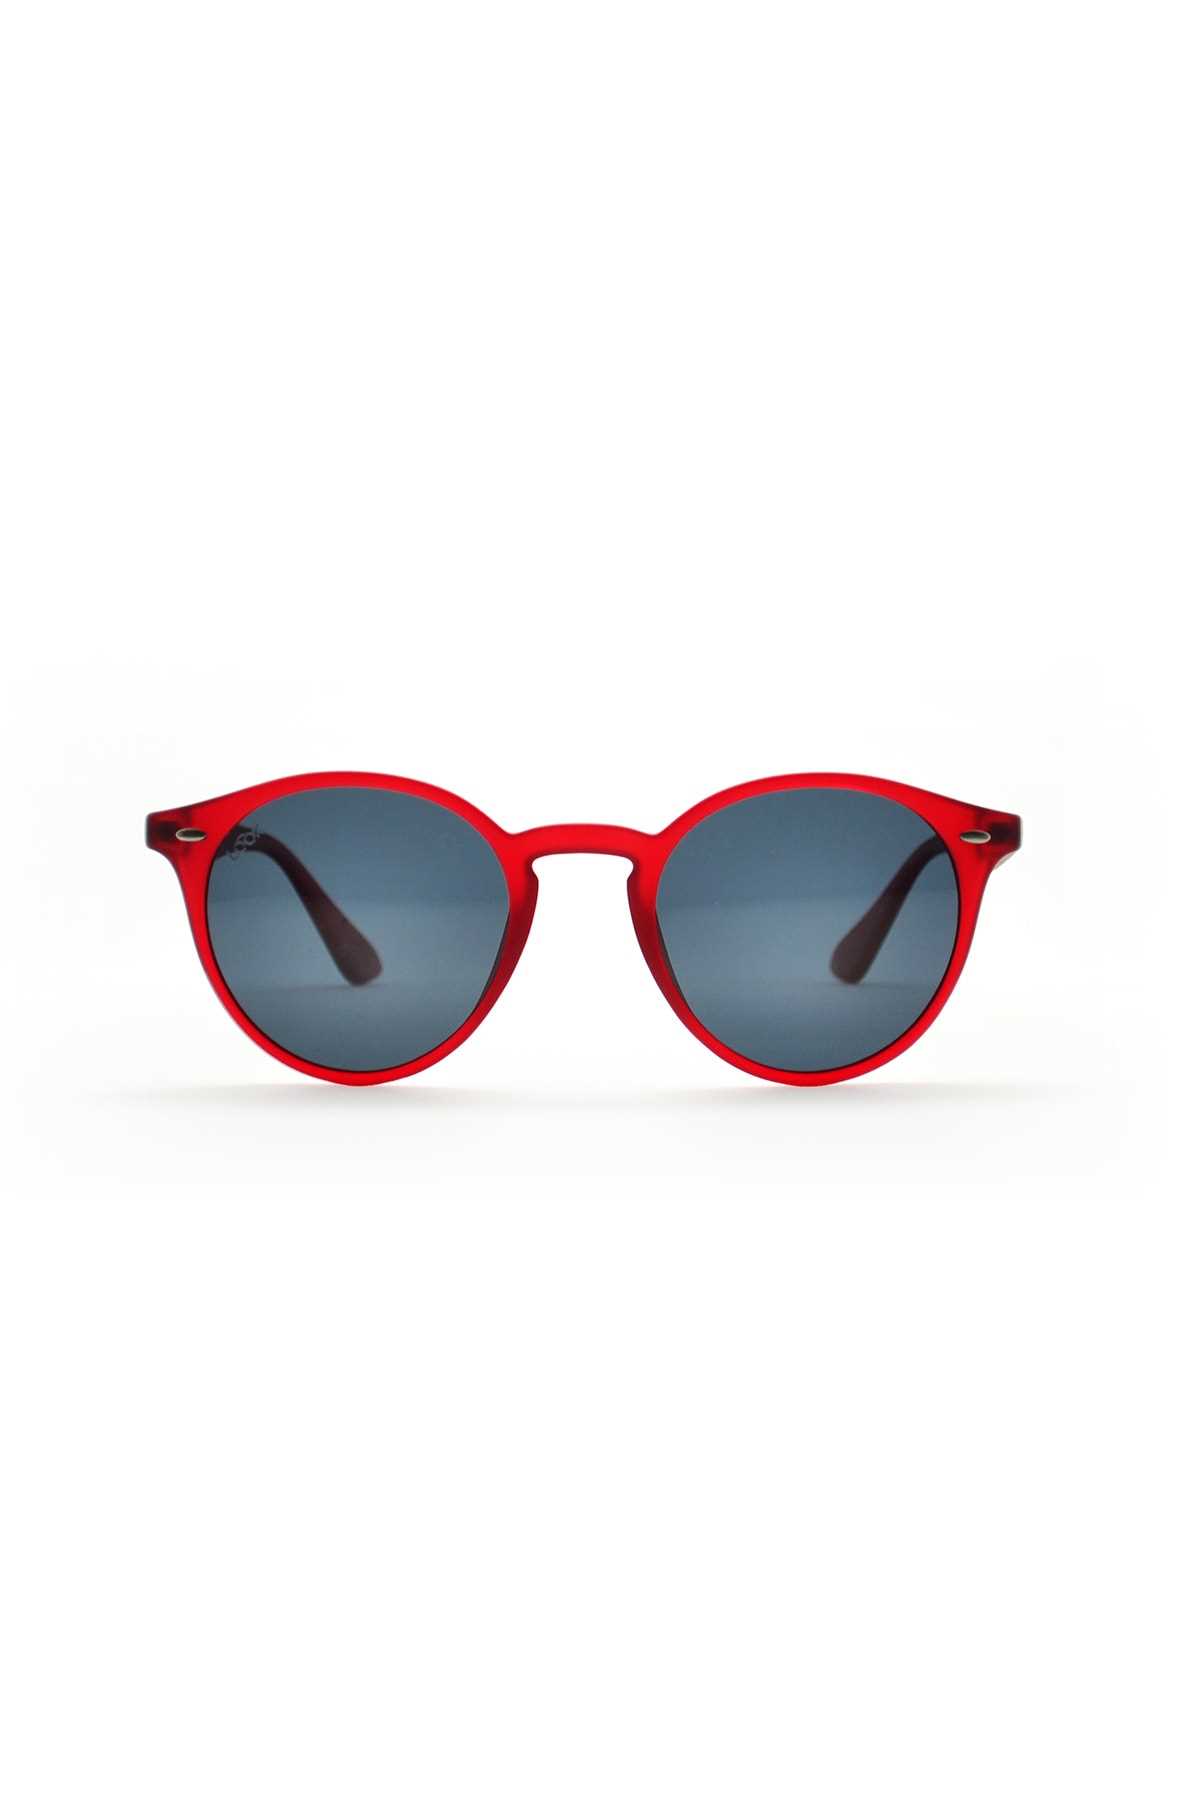 خرید اینترنتی عینک آفتابی بلند برند LOOKlight رنگ قرمز ty76142687